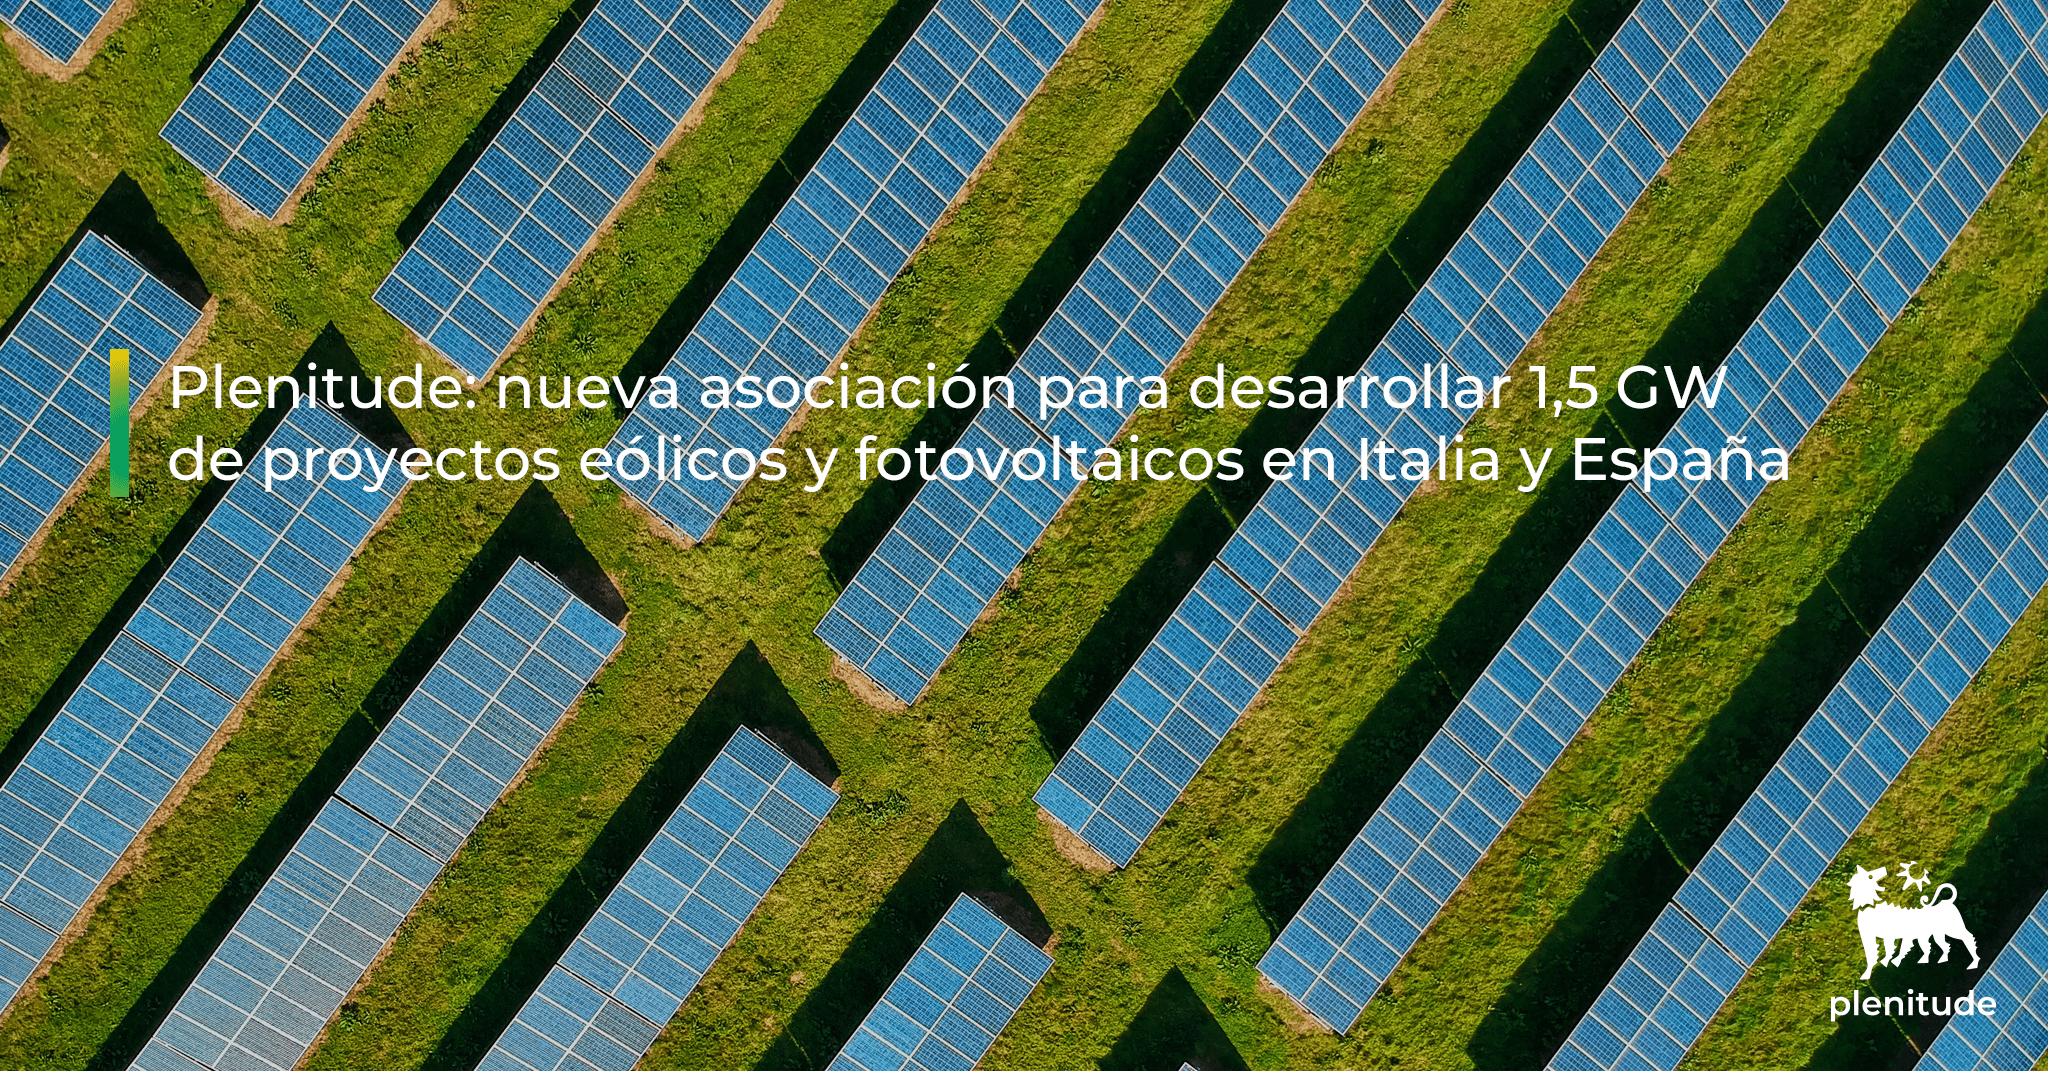 Linkedin Hergo Ren ES - Plenitude: nueva asociación para desarrollar 1,5 GW de proyectos eólicos y fotovoltaicos en Italia y España